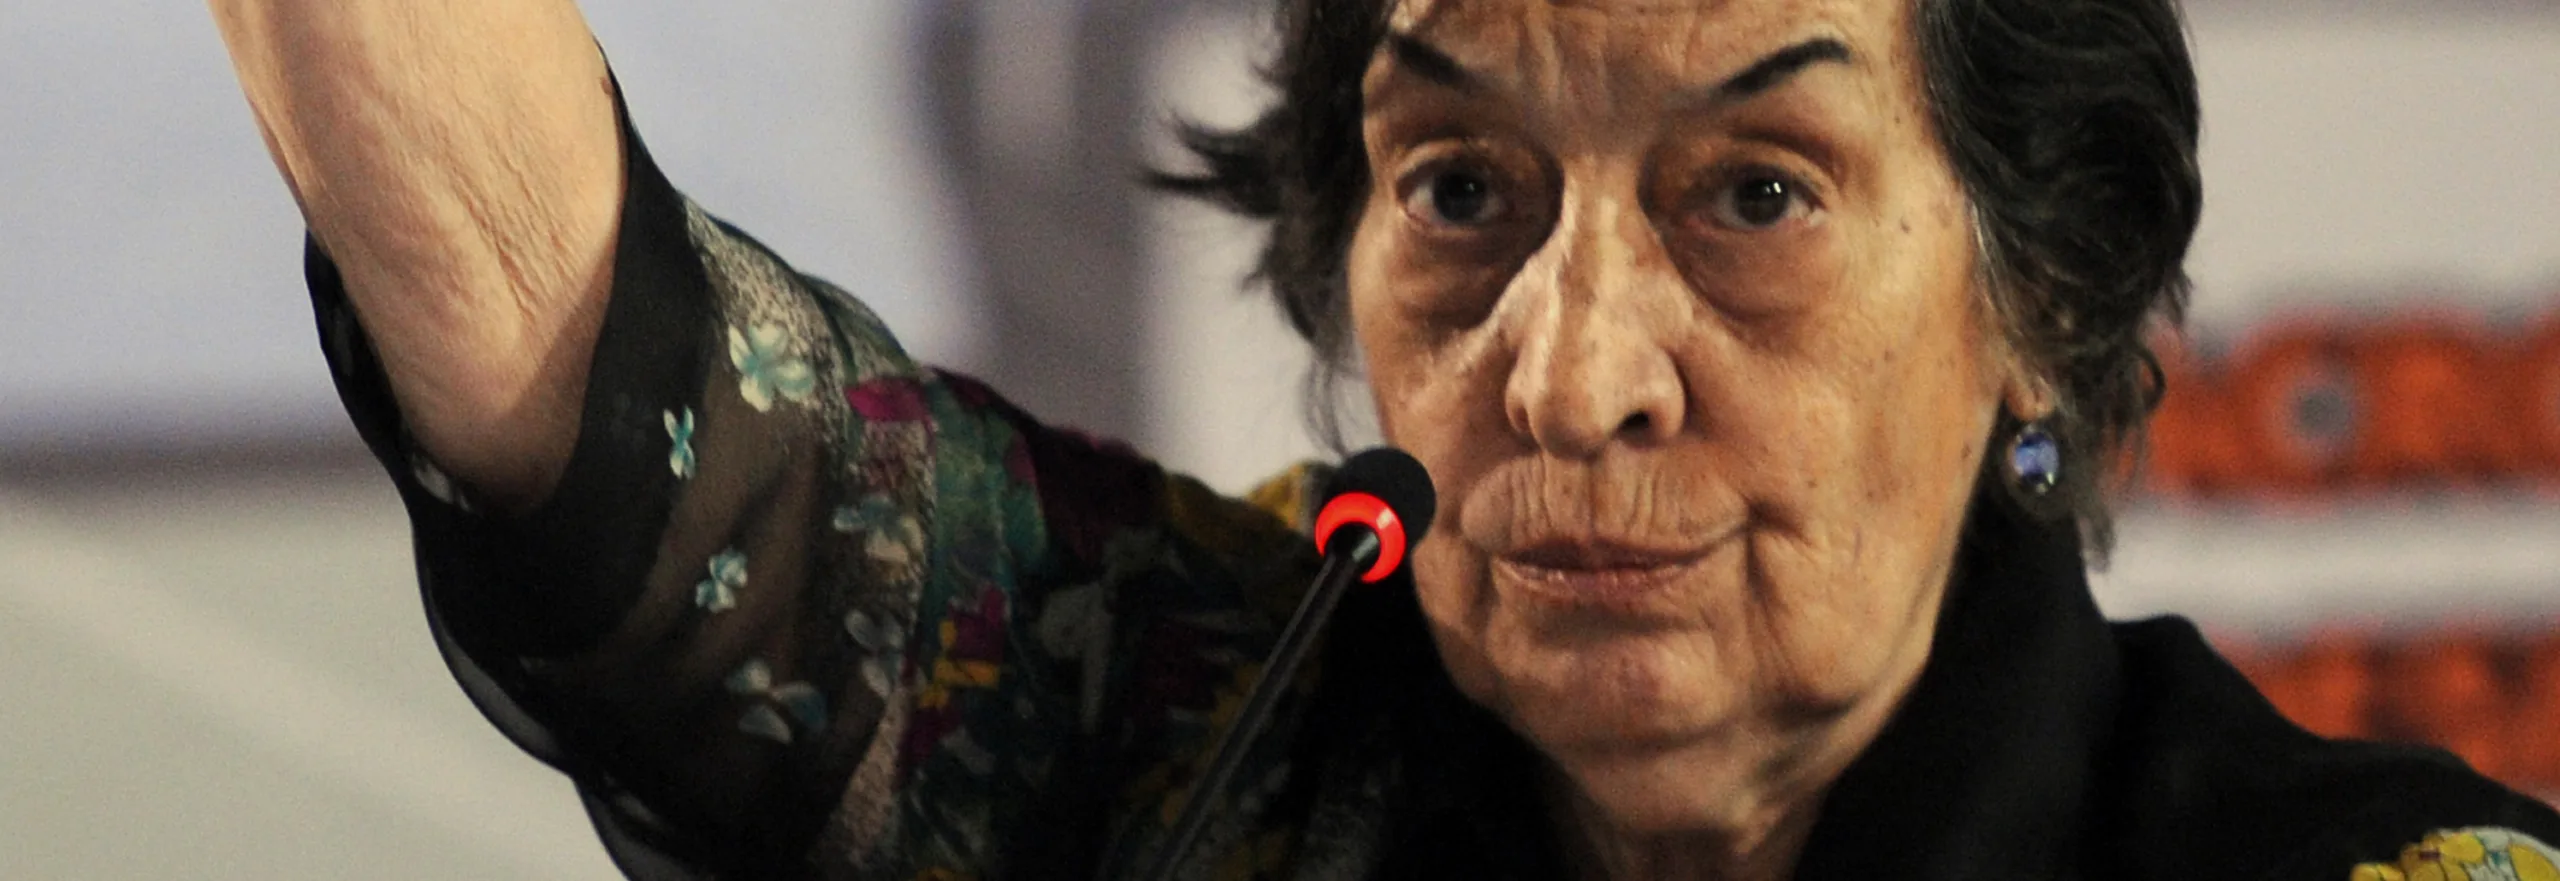 Morre a economista Maria da Conceição Tavares